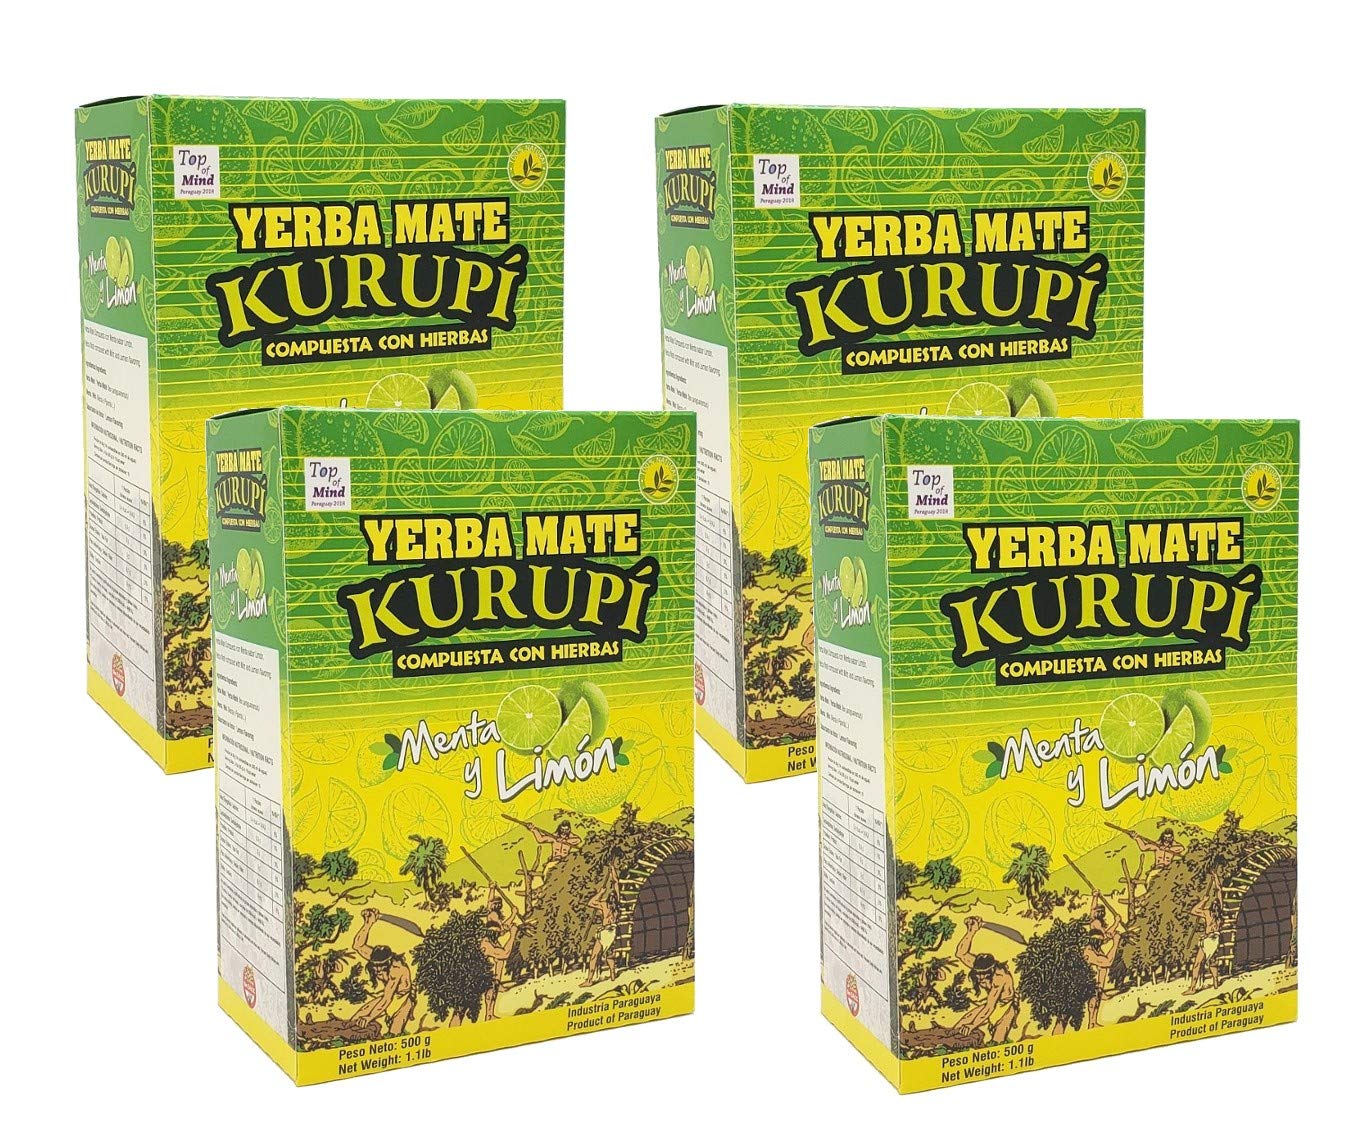 Kurupi Green and Yellow Big Box (Pack of 4)